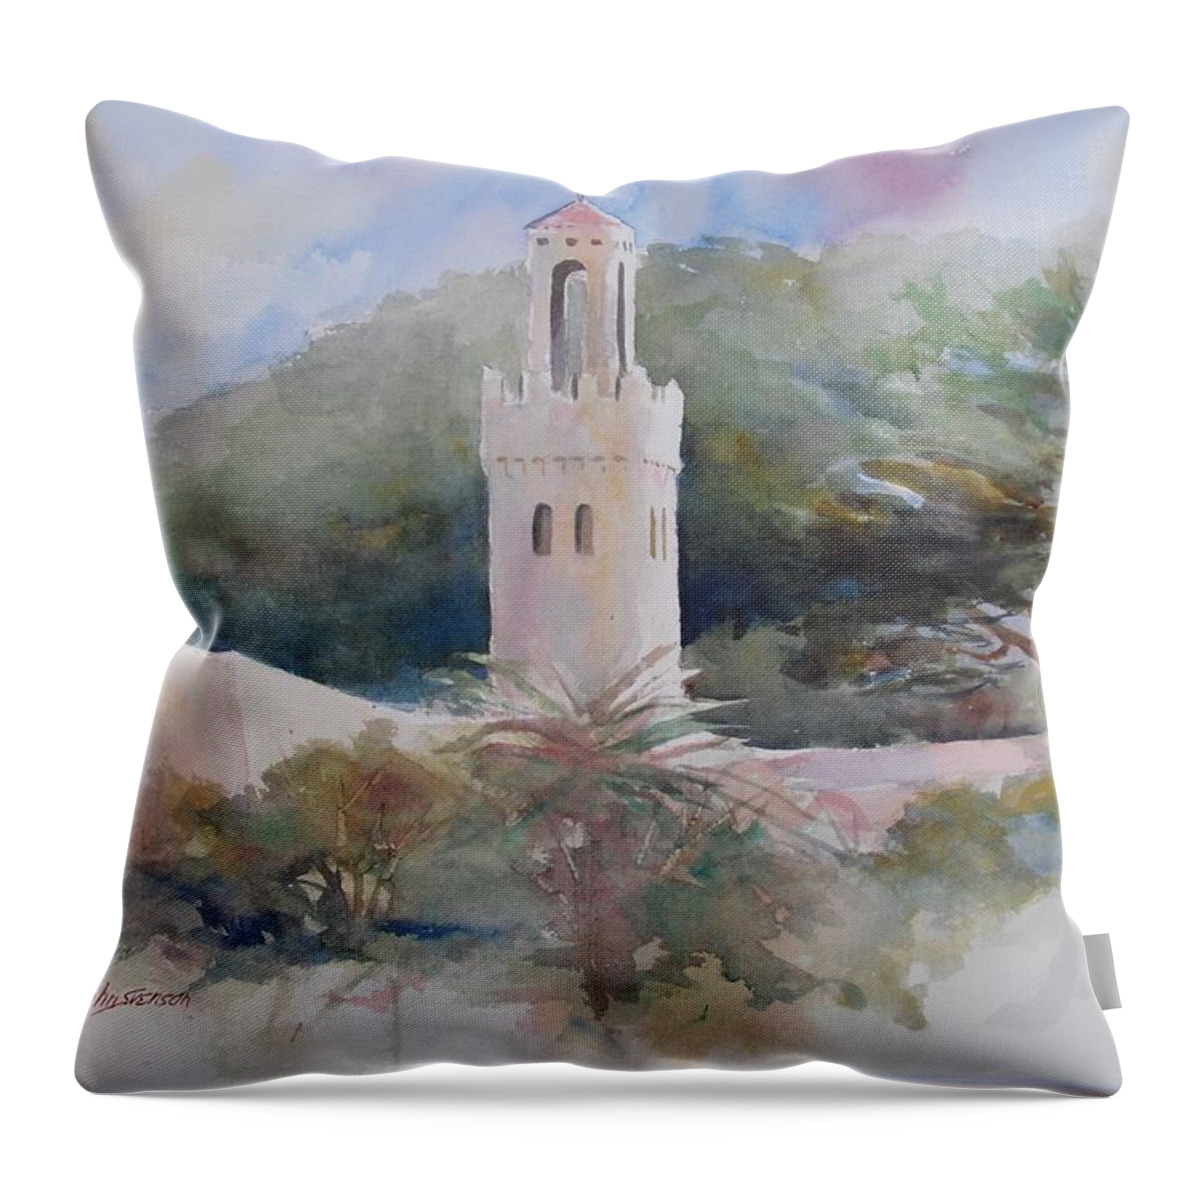 John Svenson Throw Pillow featuring the painting Carmelite Monastery by John Svenson